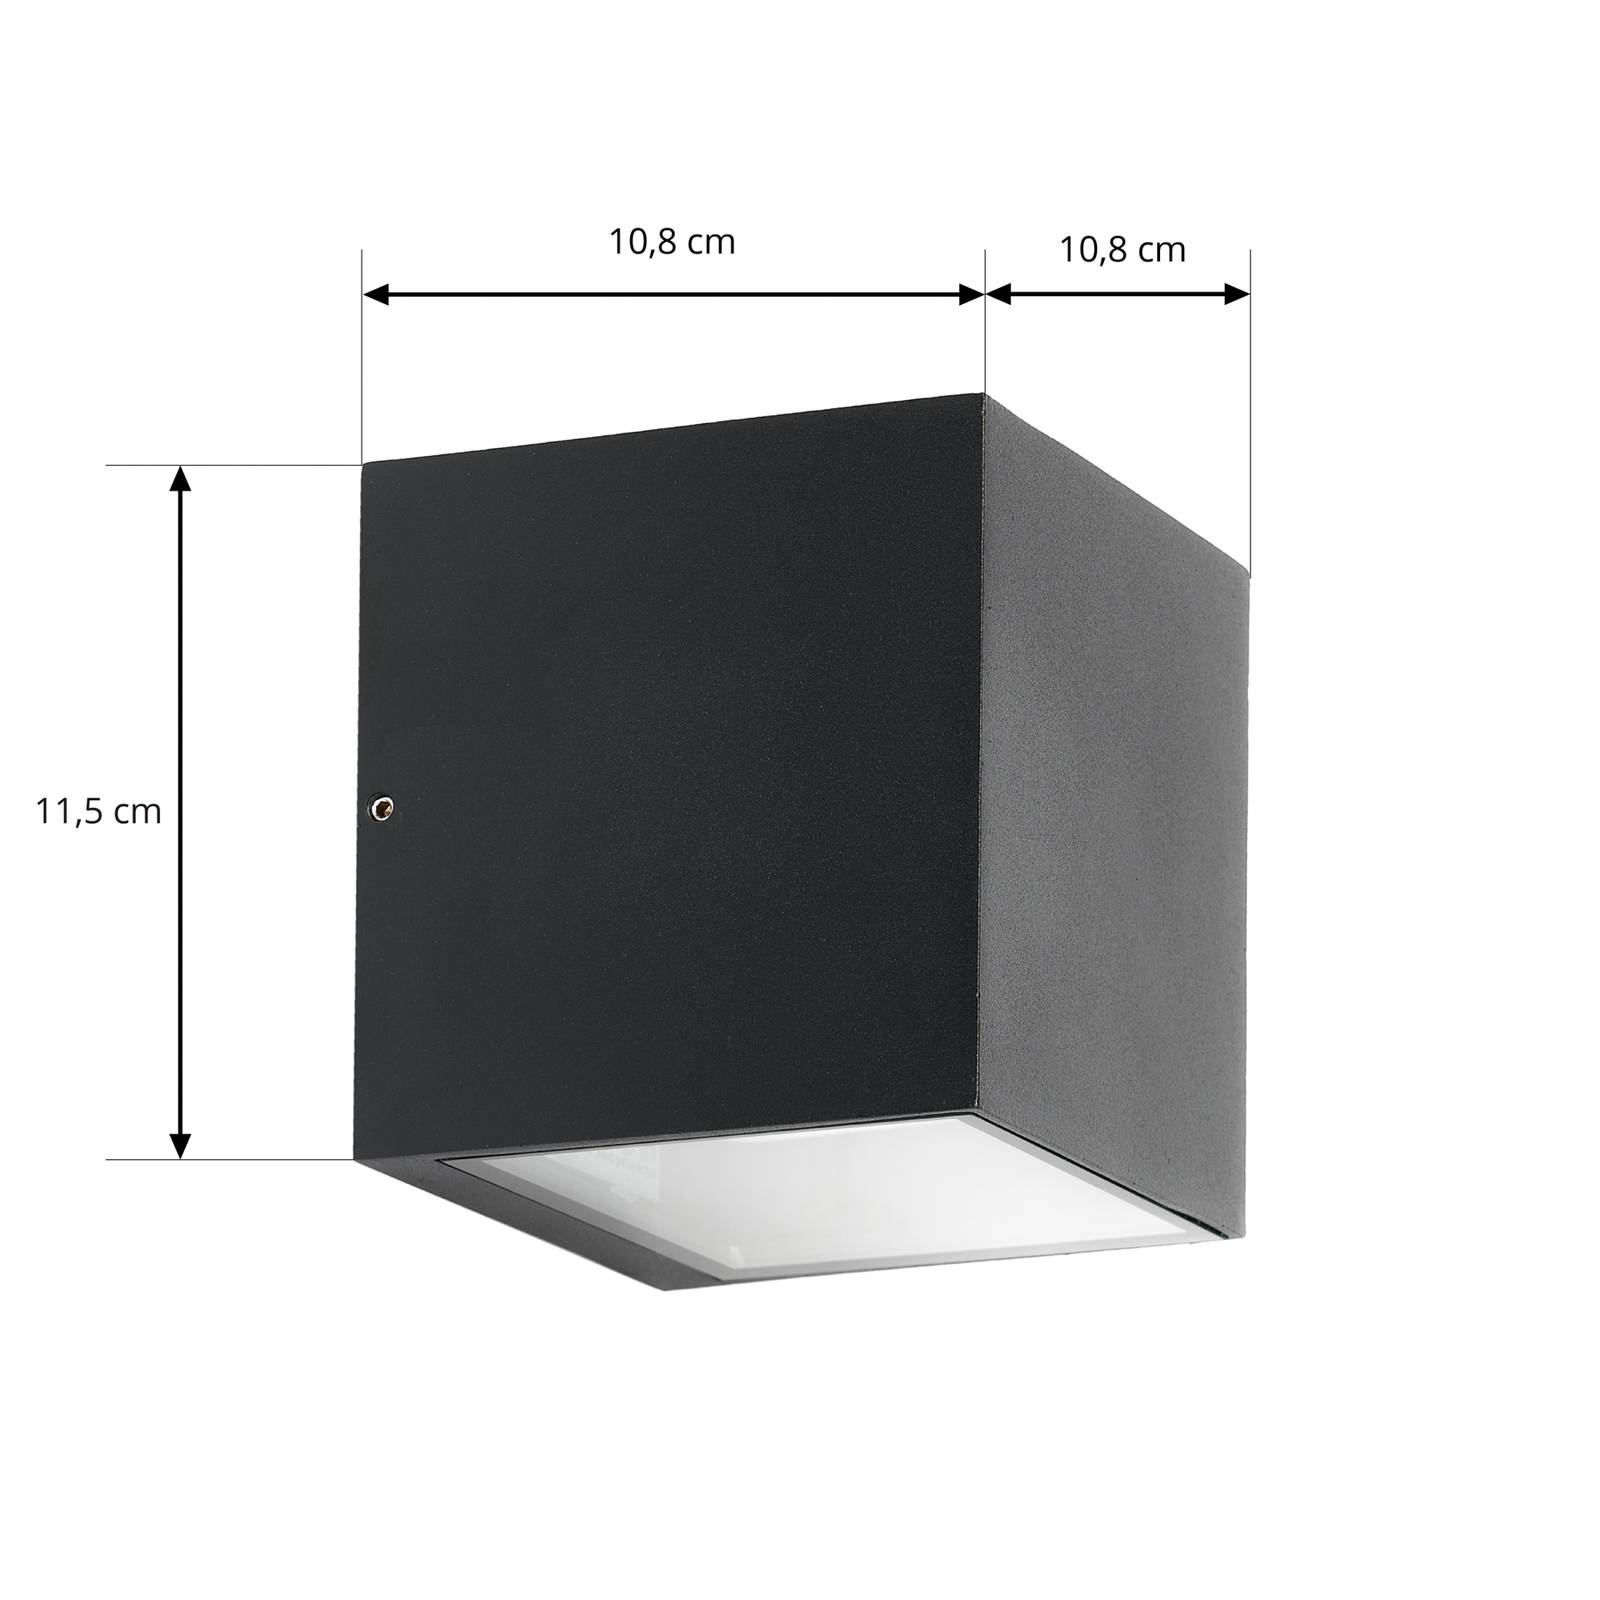 Prios Tetje kültéri fali lámpa fekete szögl 11,5cm